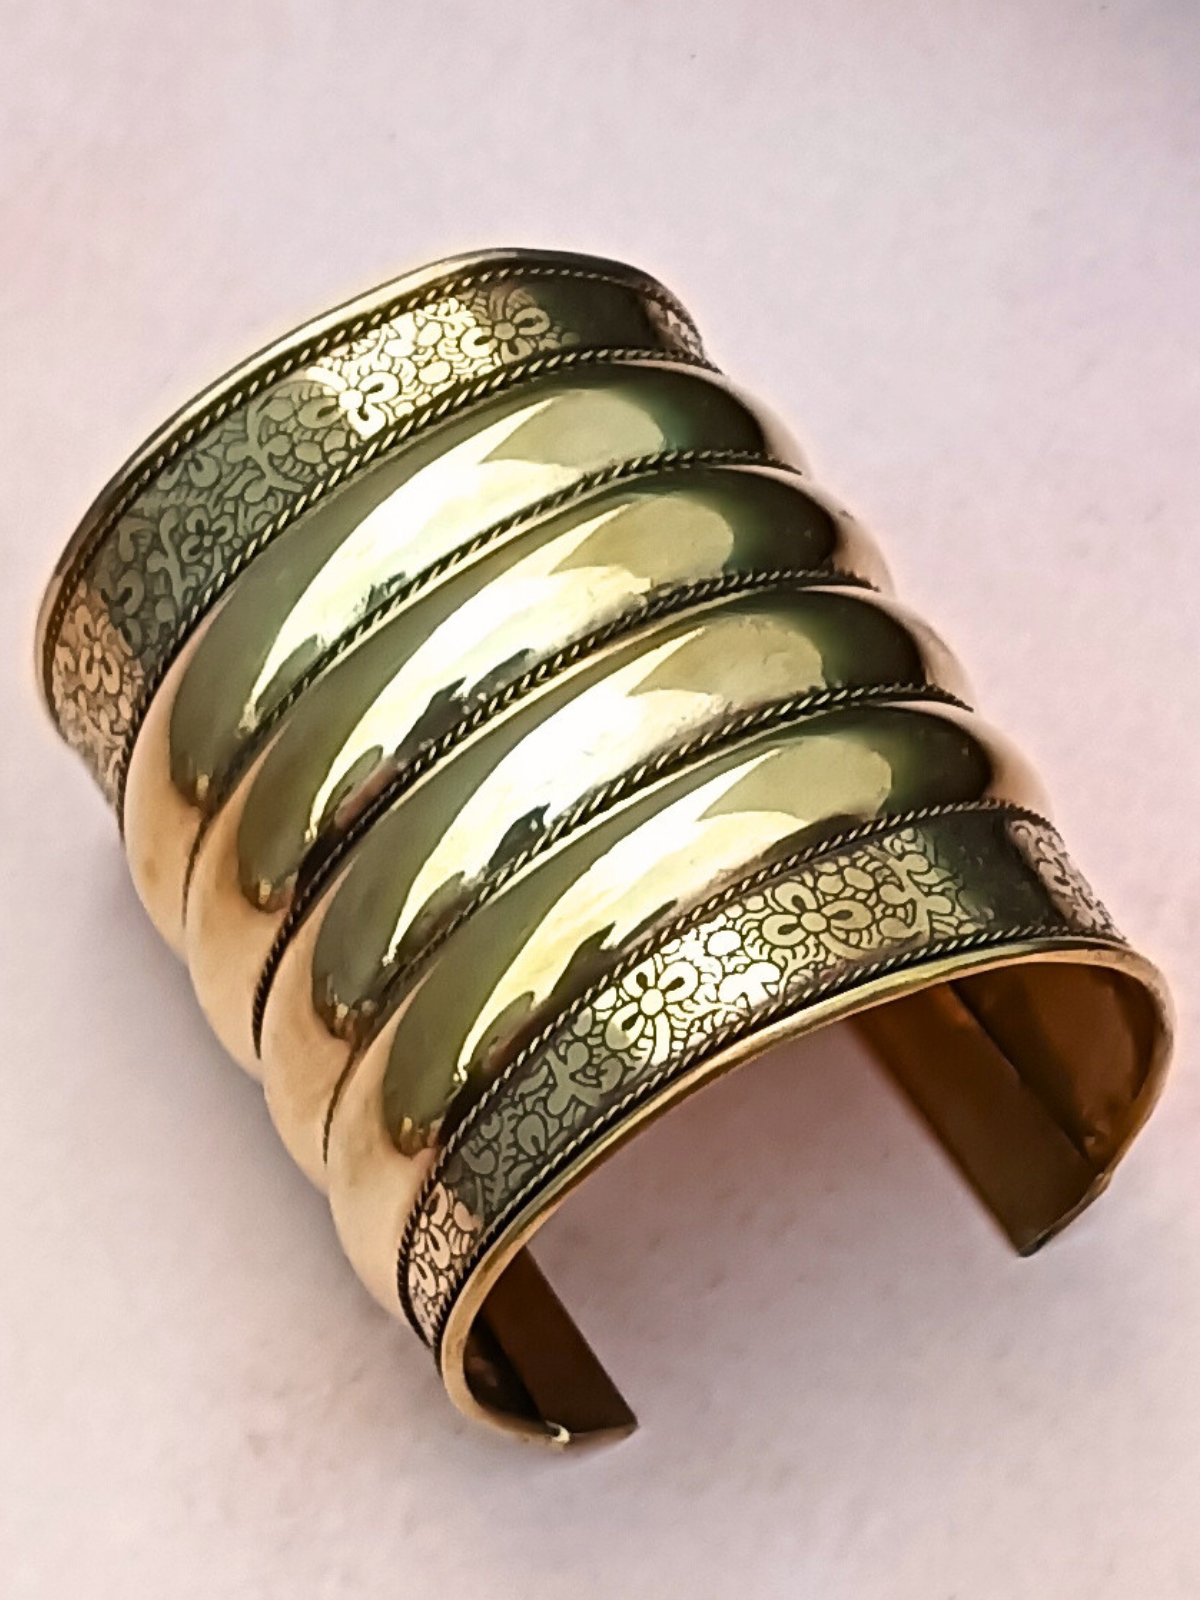 The Exotica Metal Hooped Golden Handcuff